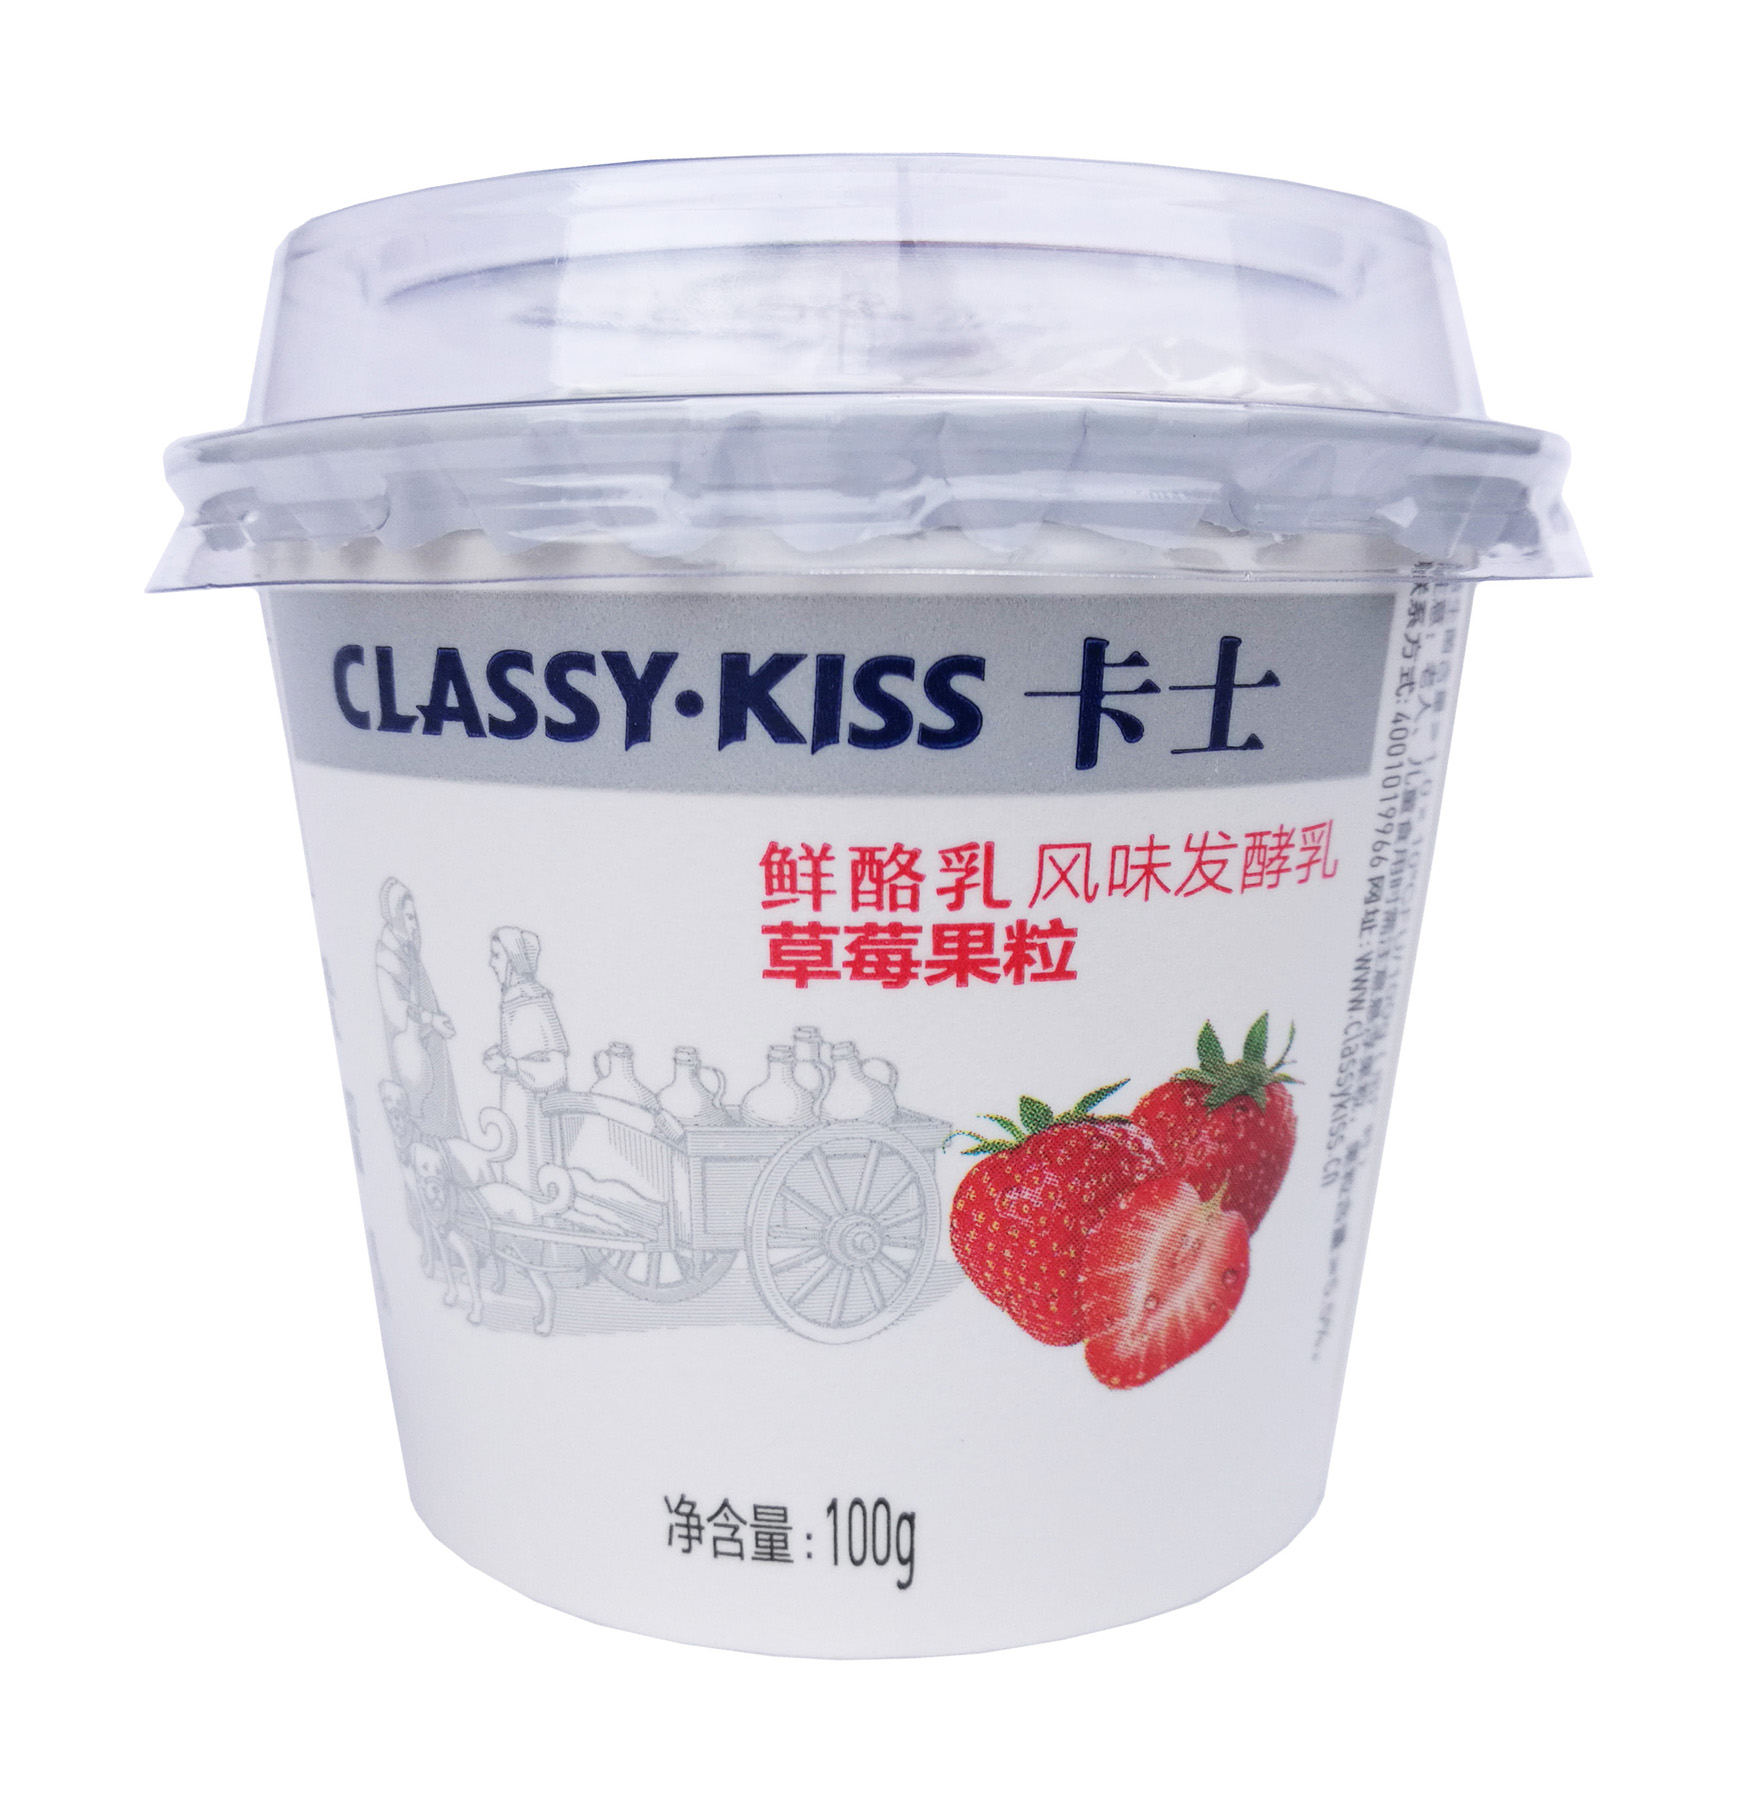 卡士酸奶原味/草莓味鲜酪乳发酵乳 2种口味